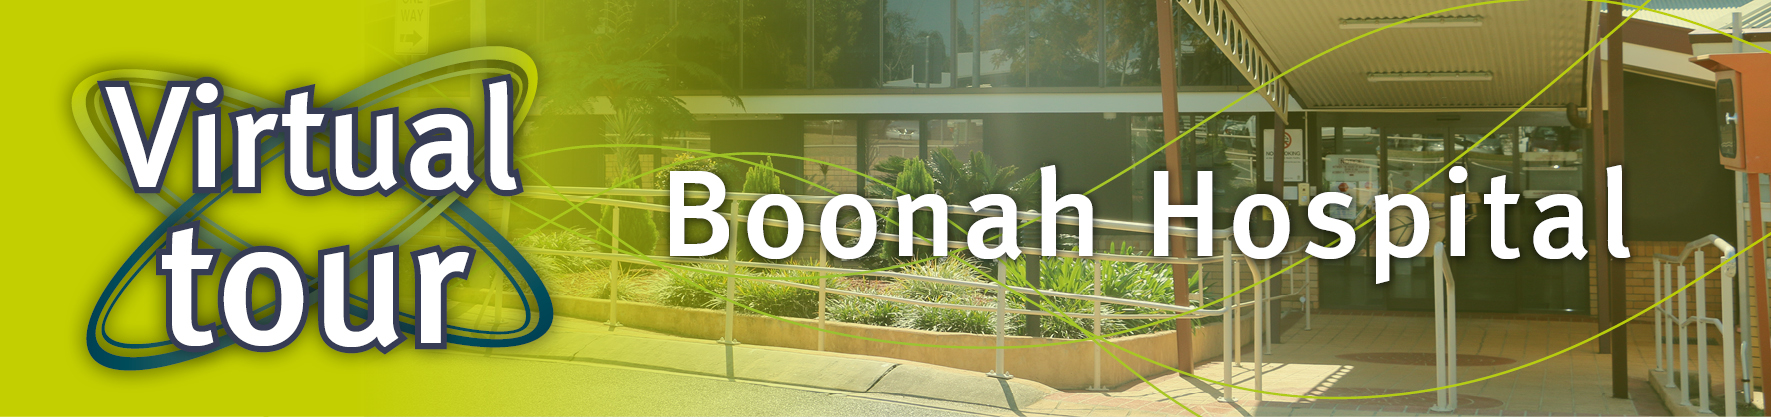 Boonah Health Virtual Tour